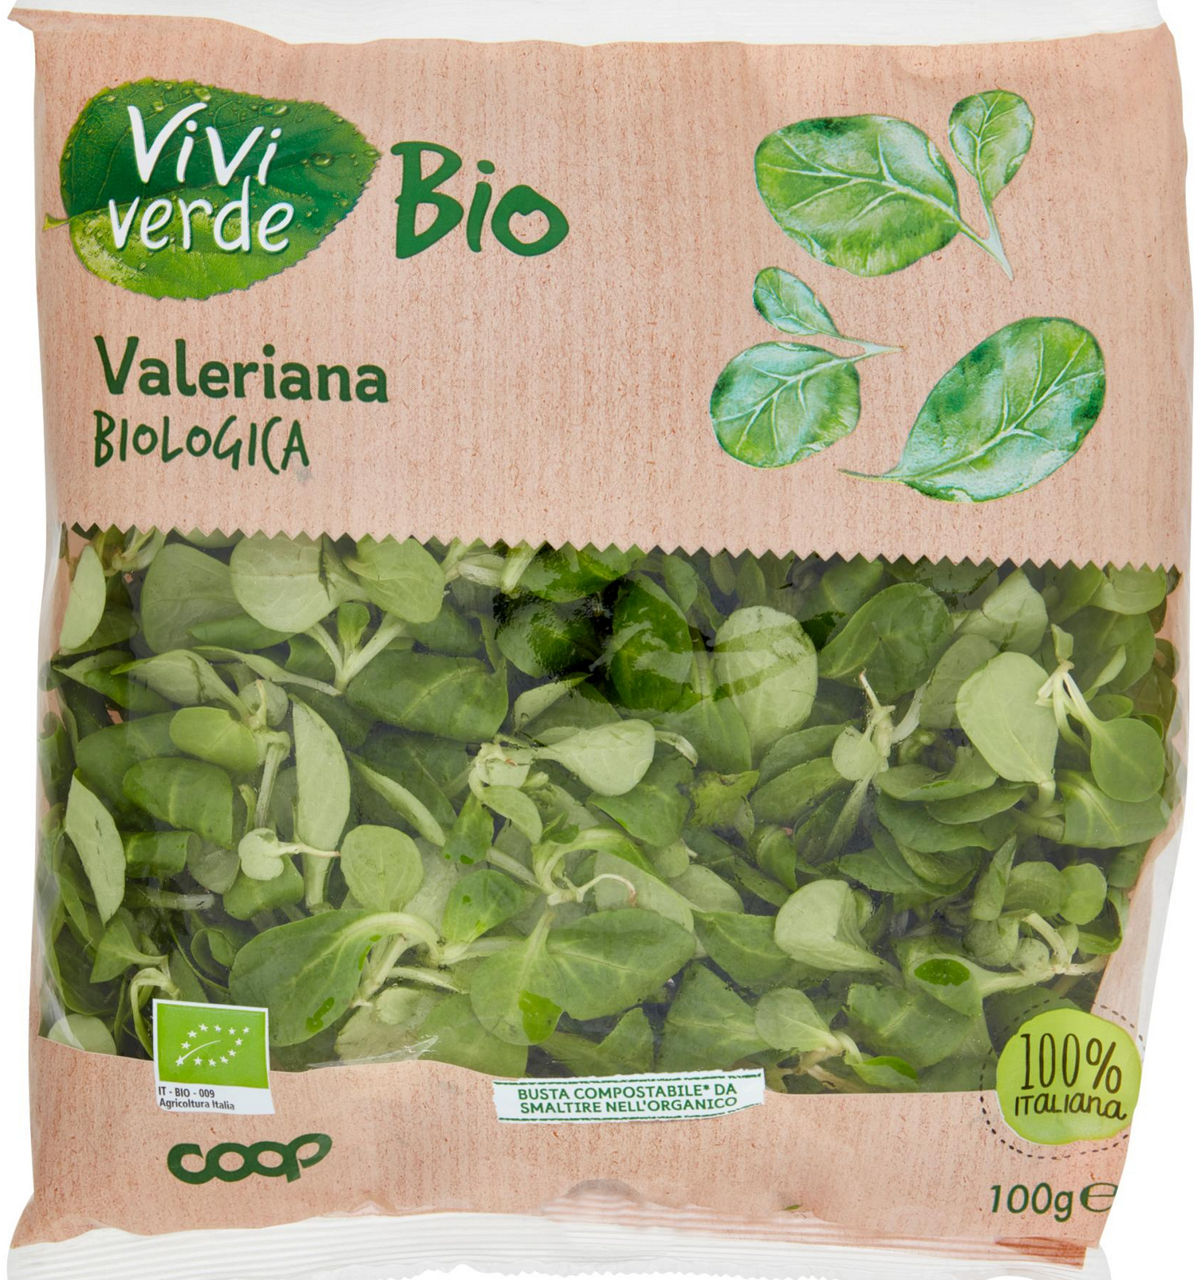 valeriana Biologica 100 g vivi verde - 2